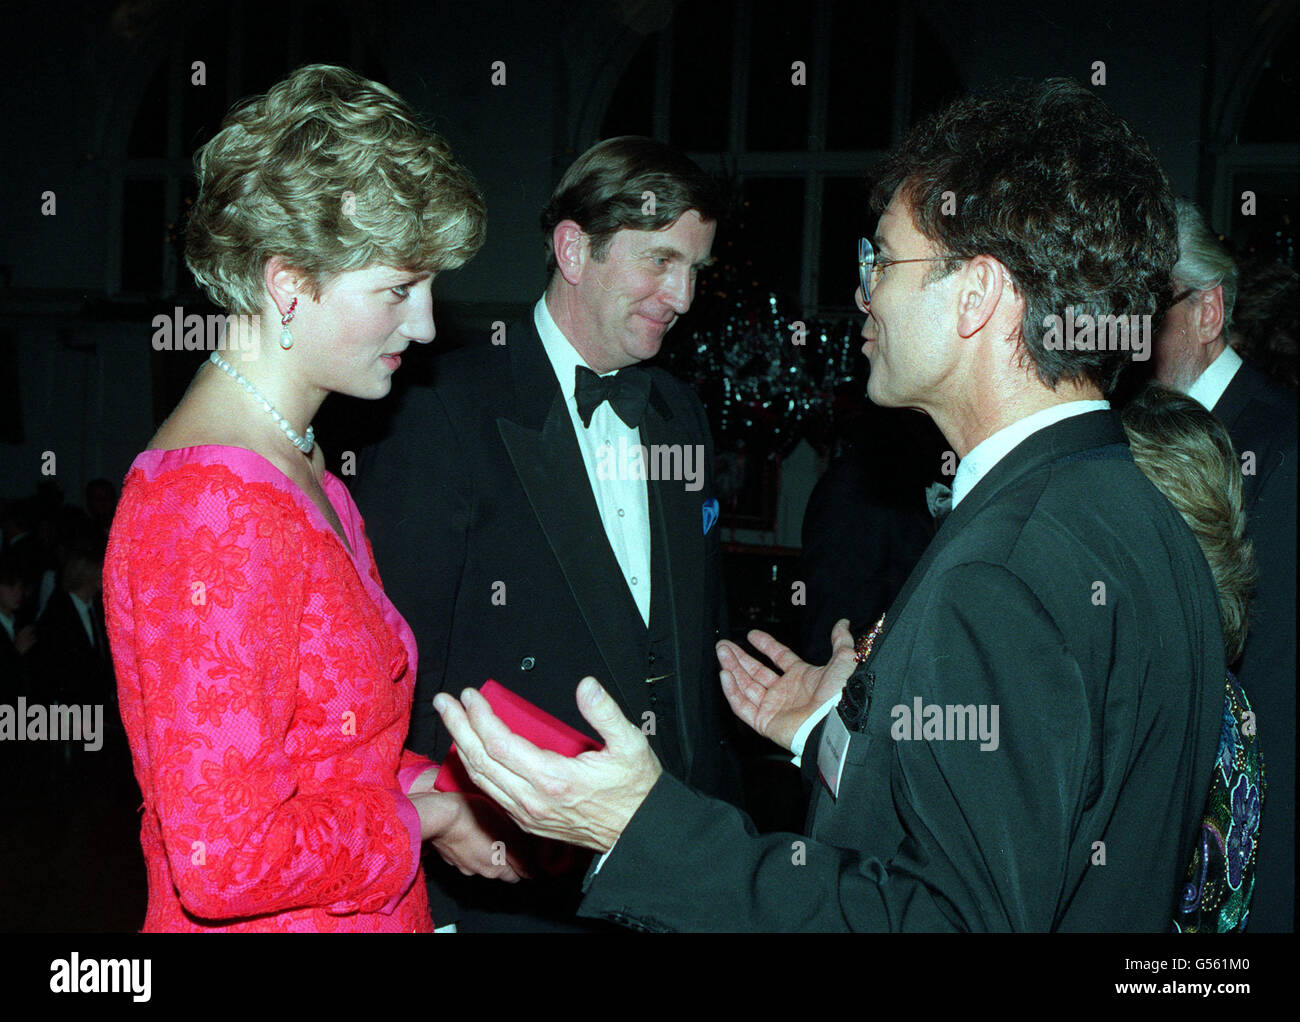 1991 : la Principessa del Galles incontra la pop star Cliff Richard alla Royal School of Music di Londra dopo aver frequentato lo spettacolare Natale annuale "Joy to the World" nella vicina Royal Albert Hall. Foto Stock